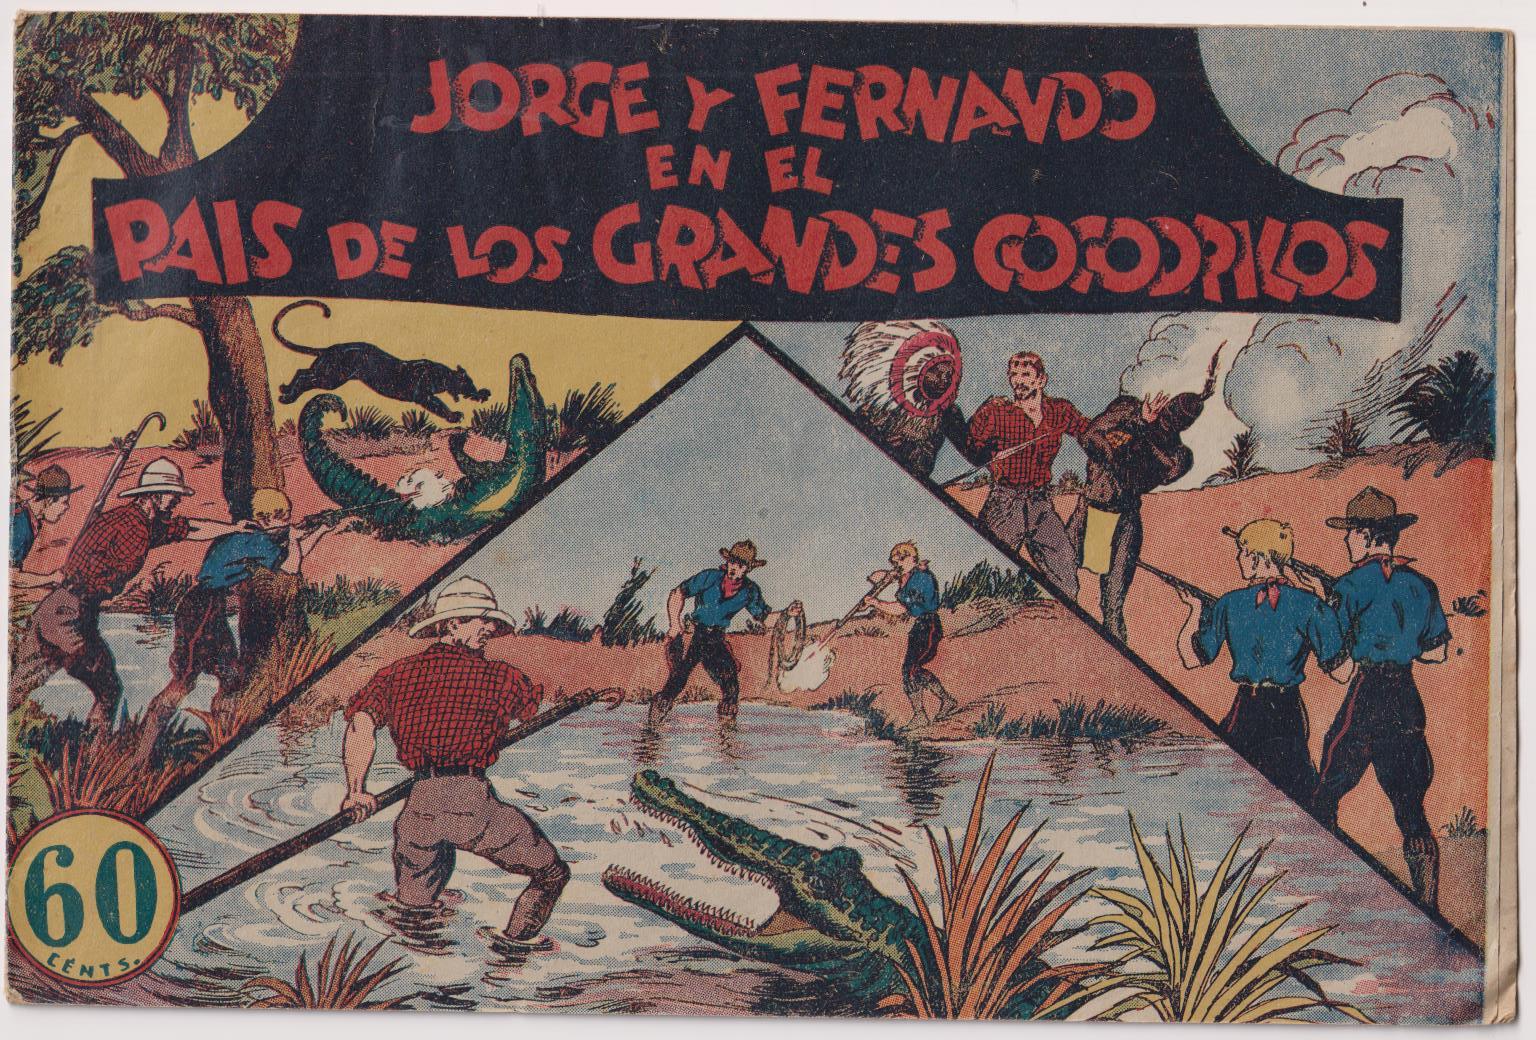 Jorge y Fernando nº 15. En el país de los grandes cocodrilos. Hispano americana 1940